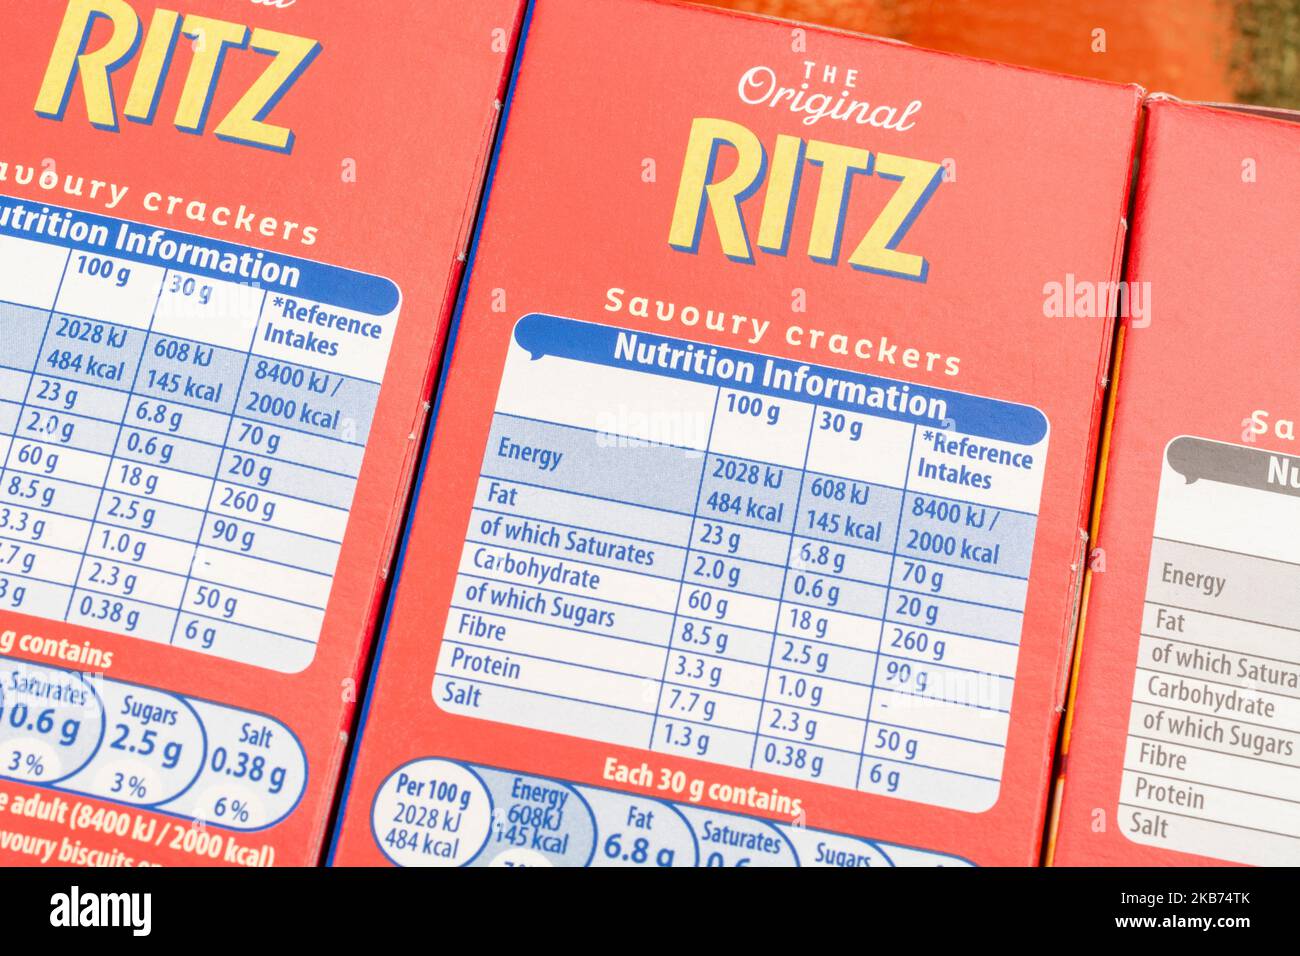 Gros plan de l'étiquette de nutrition sur le paquet de cartes de biscuits Ritz / biscuits avec des informations sur l'alimentation / étiquetage de la nutrition alimentaire. Pour la teneur en ingrédients. Banque D'Images